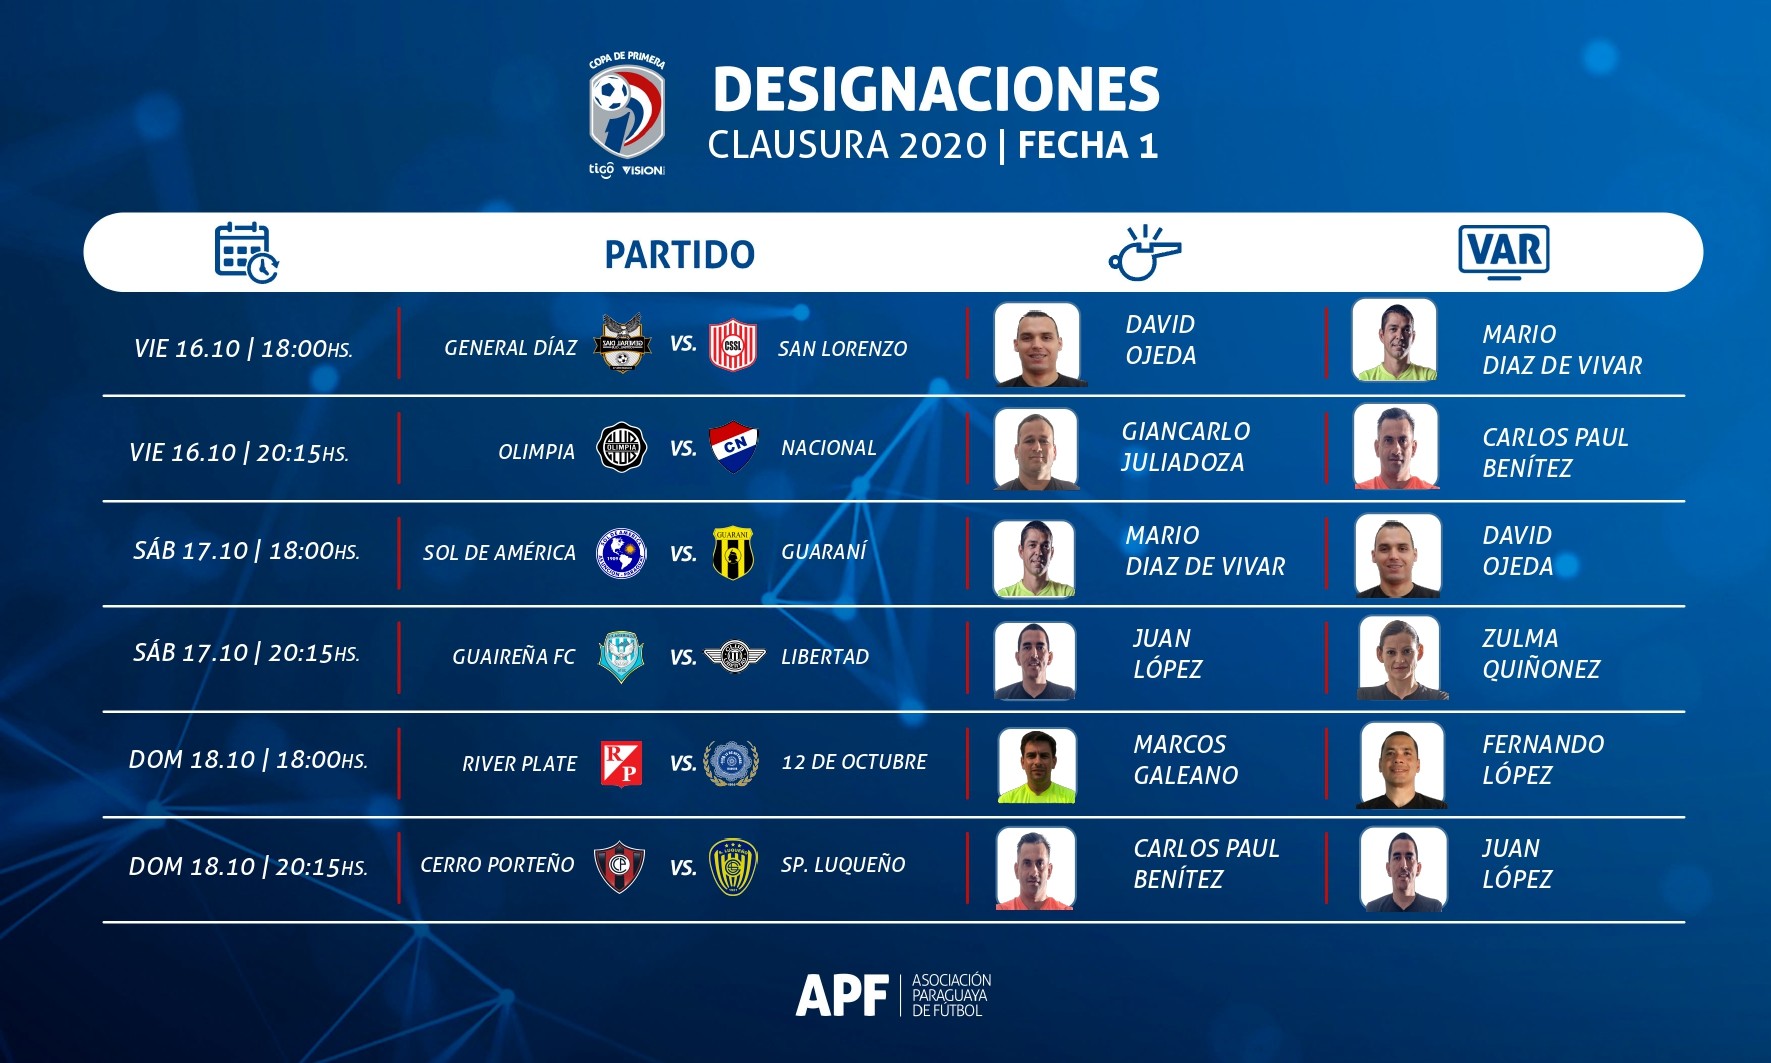 Designaciones para el Clausura 2020 - Fecha 1. Fuente: APF